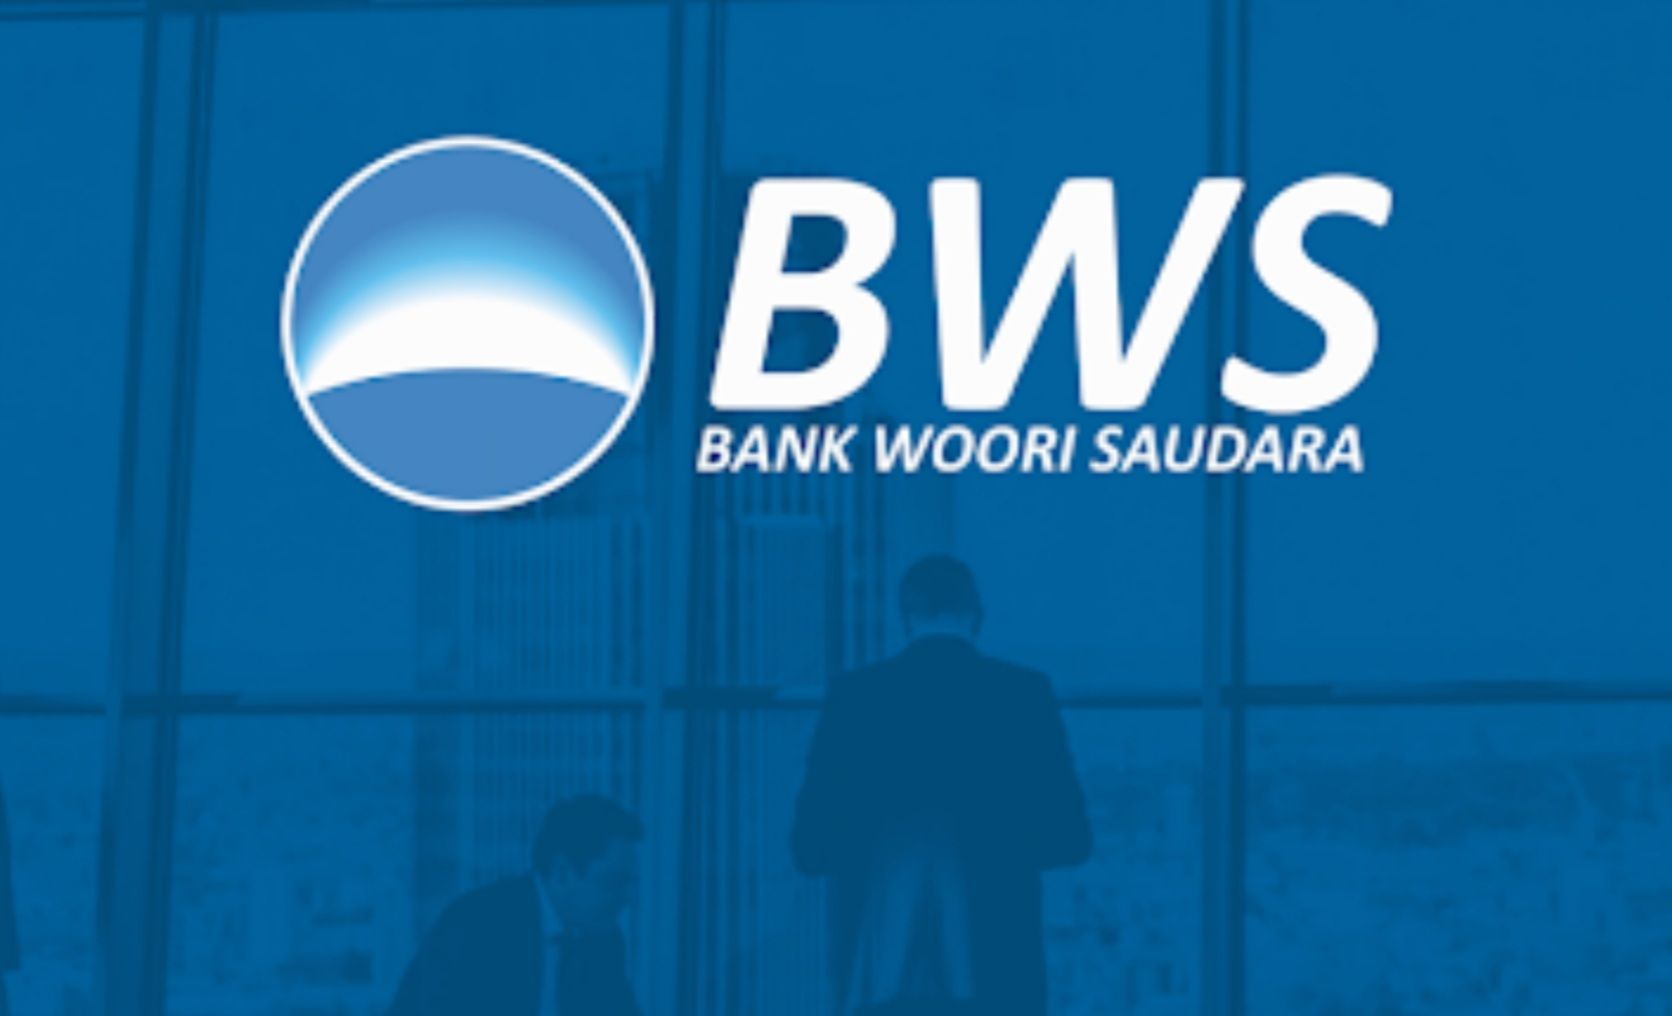 Bank Woori Saudara (BWS) melalui aplikasi mobile banking BWS meluncurkan WON by BWS. Ini adalah layanan buka rekening secara digital.